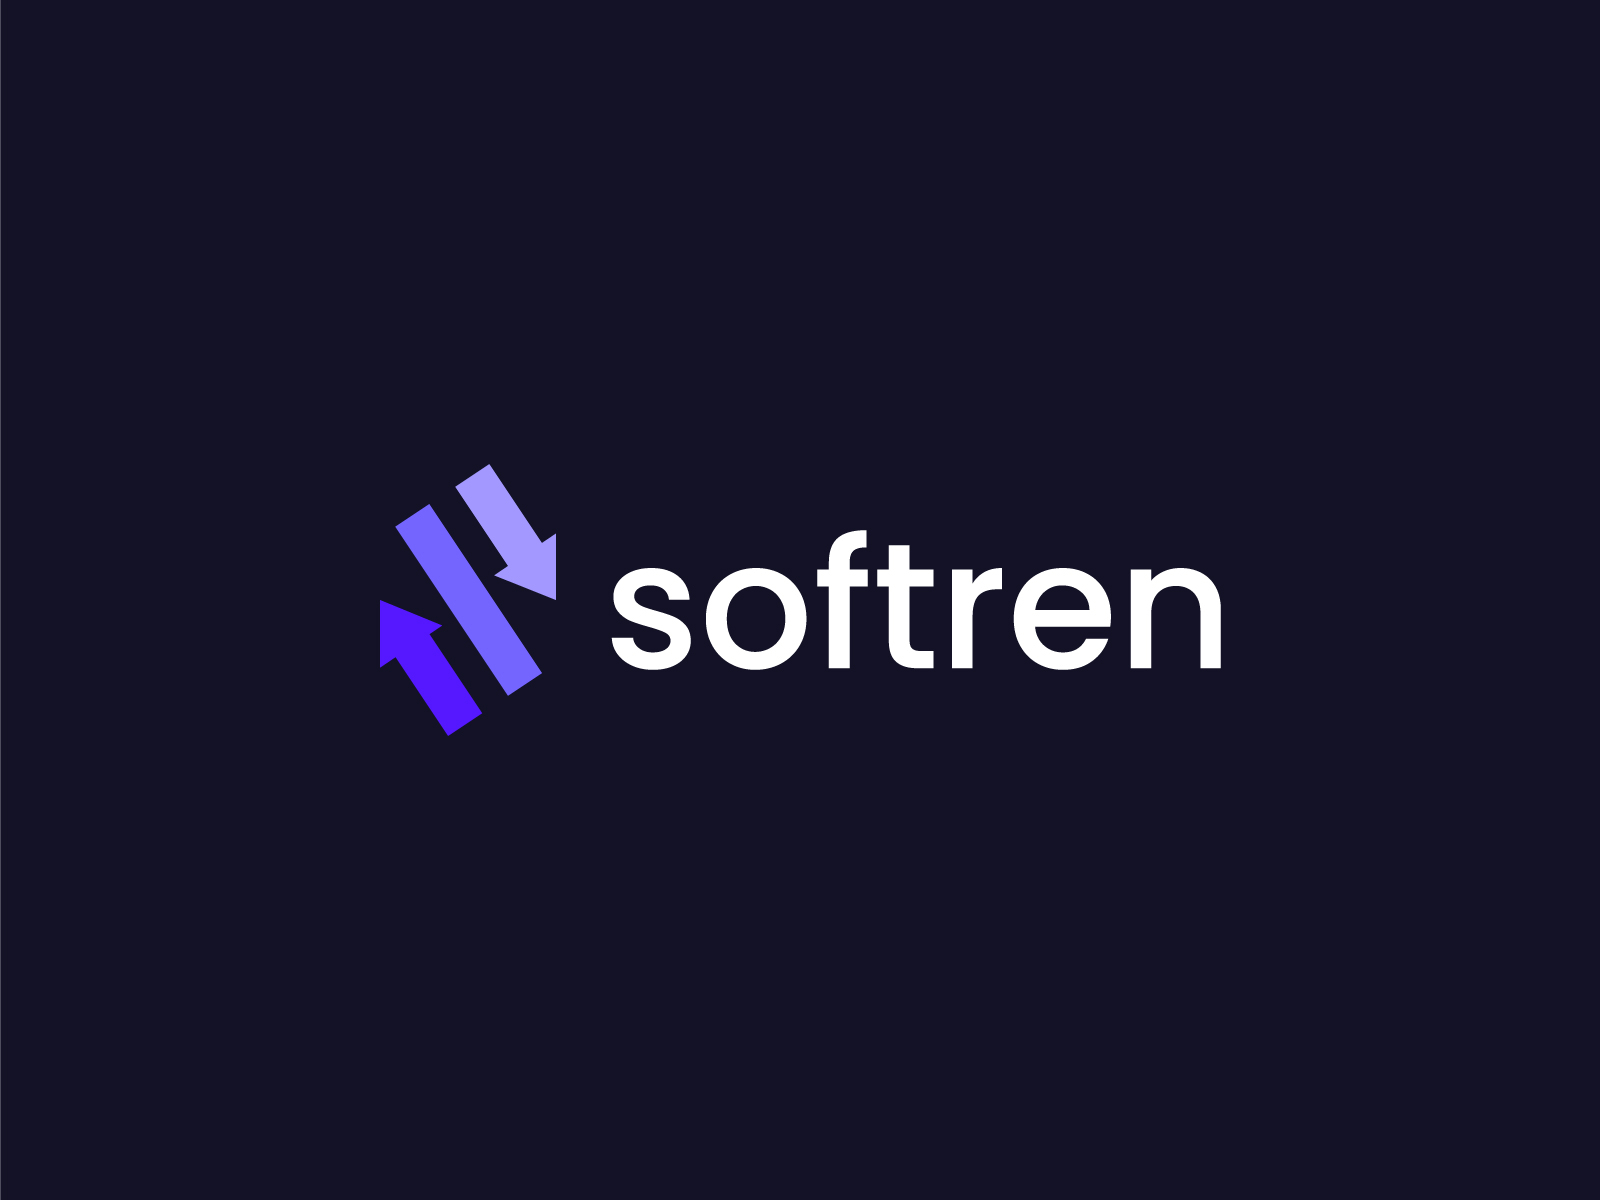 softren logo design by Sudipta Bhuinya on Dribbble